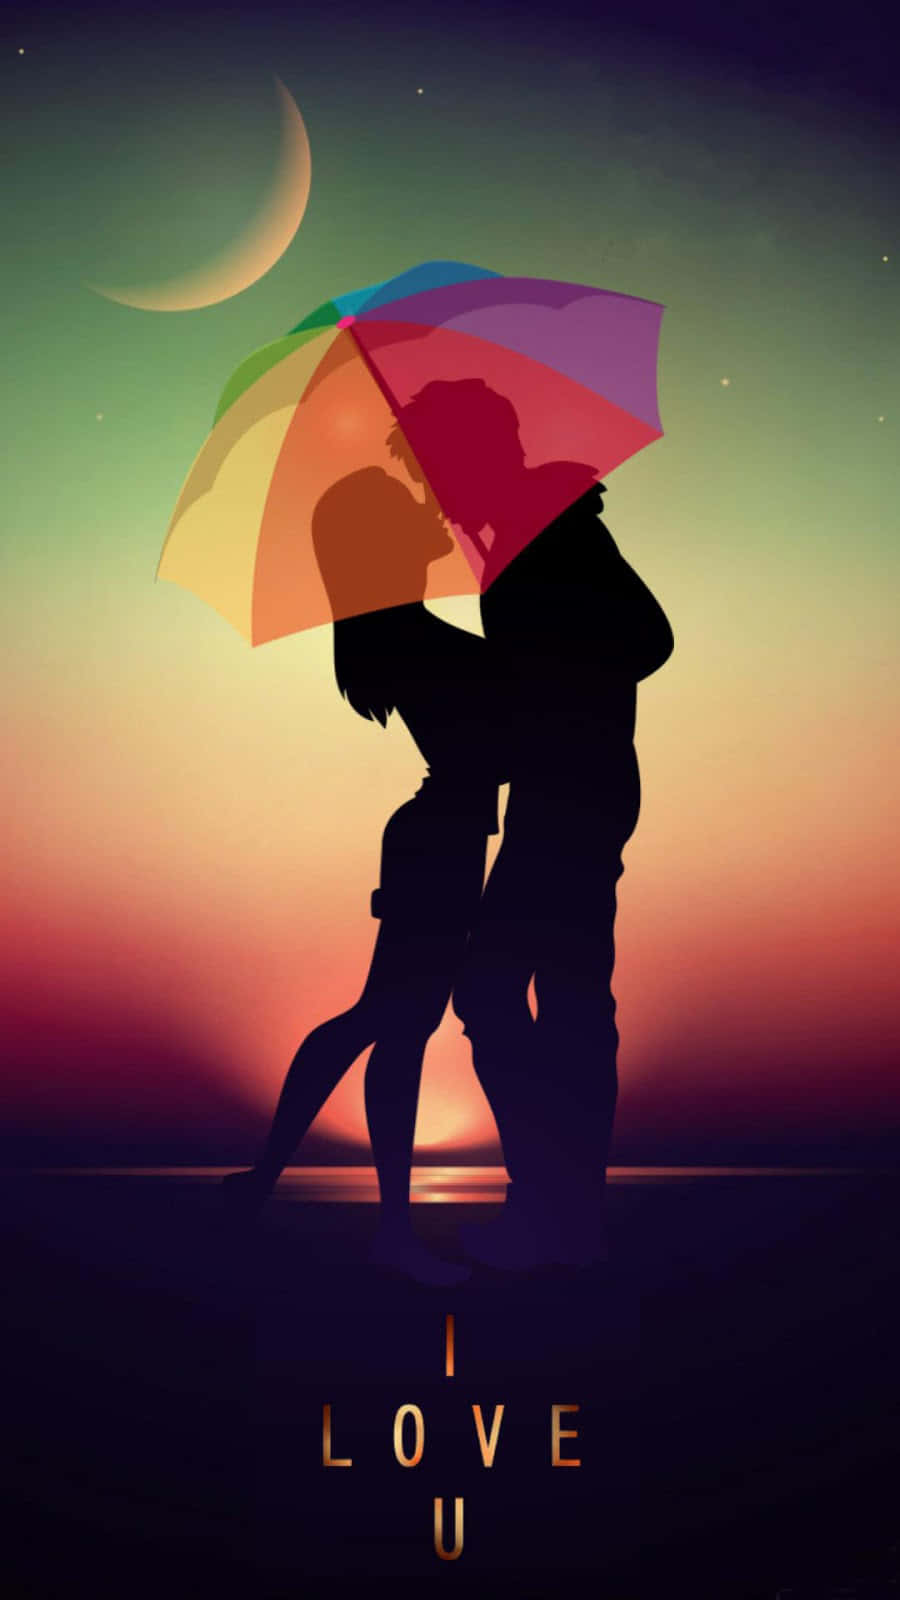 Romantic I Love You Silhouette Cover Wallpaper